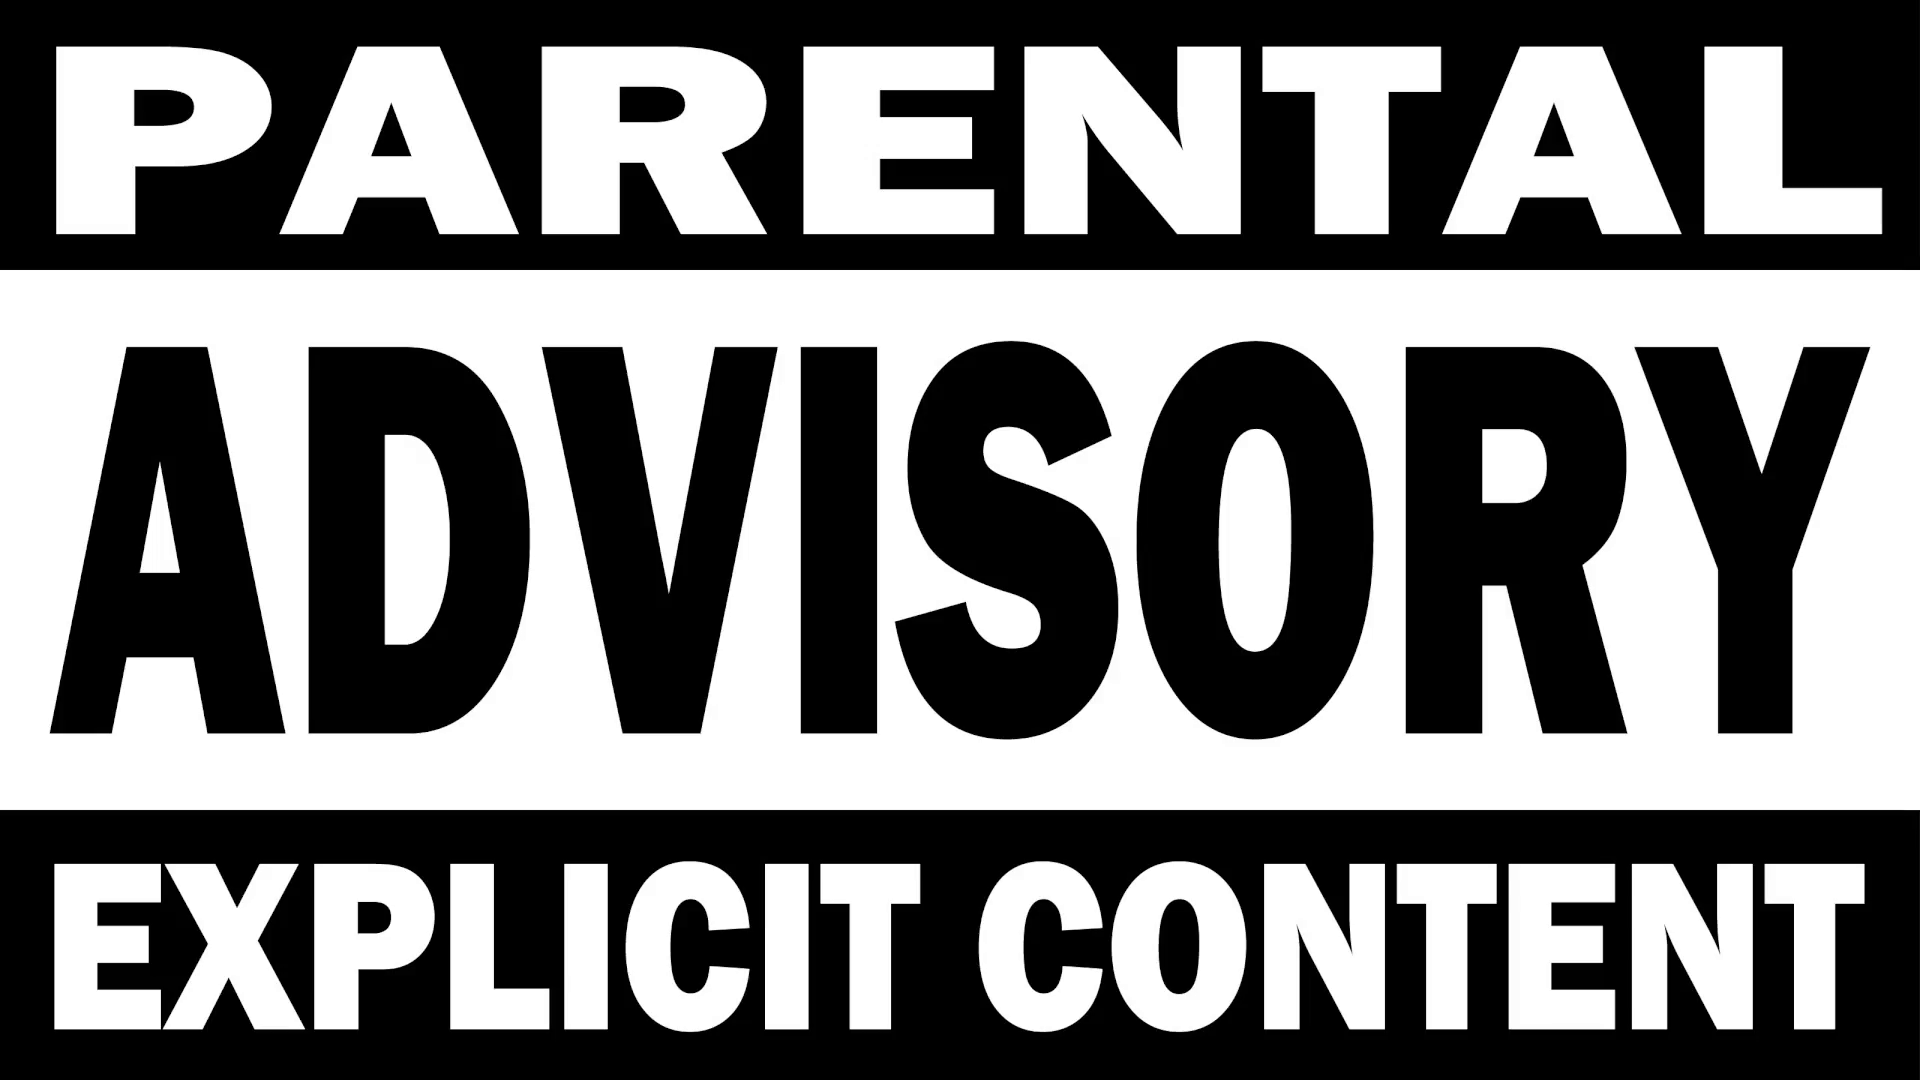 Parental Advisory Explıcıt Content, Download Wallpaper on Jakpost